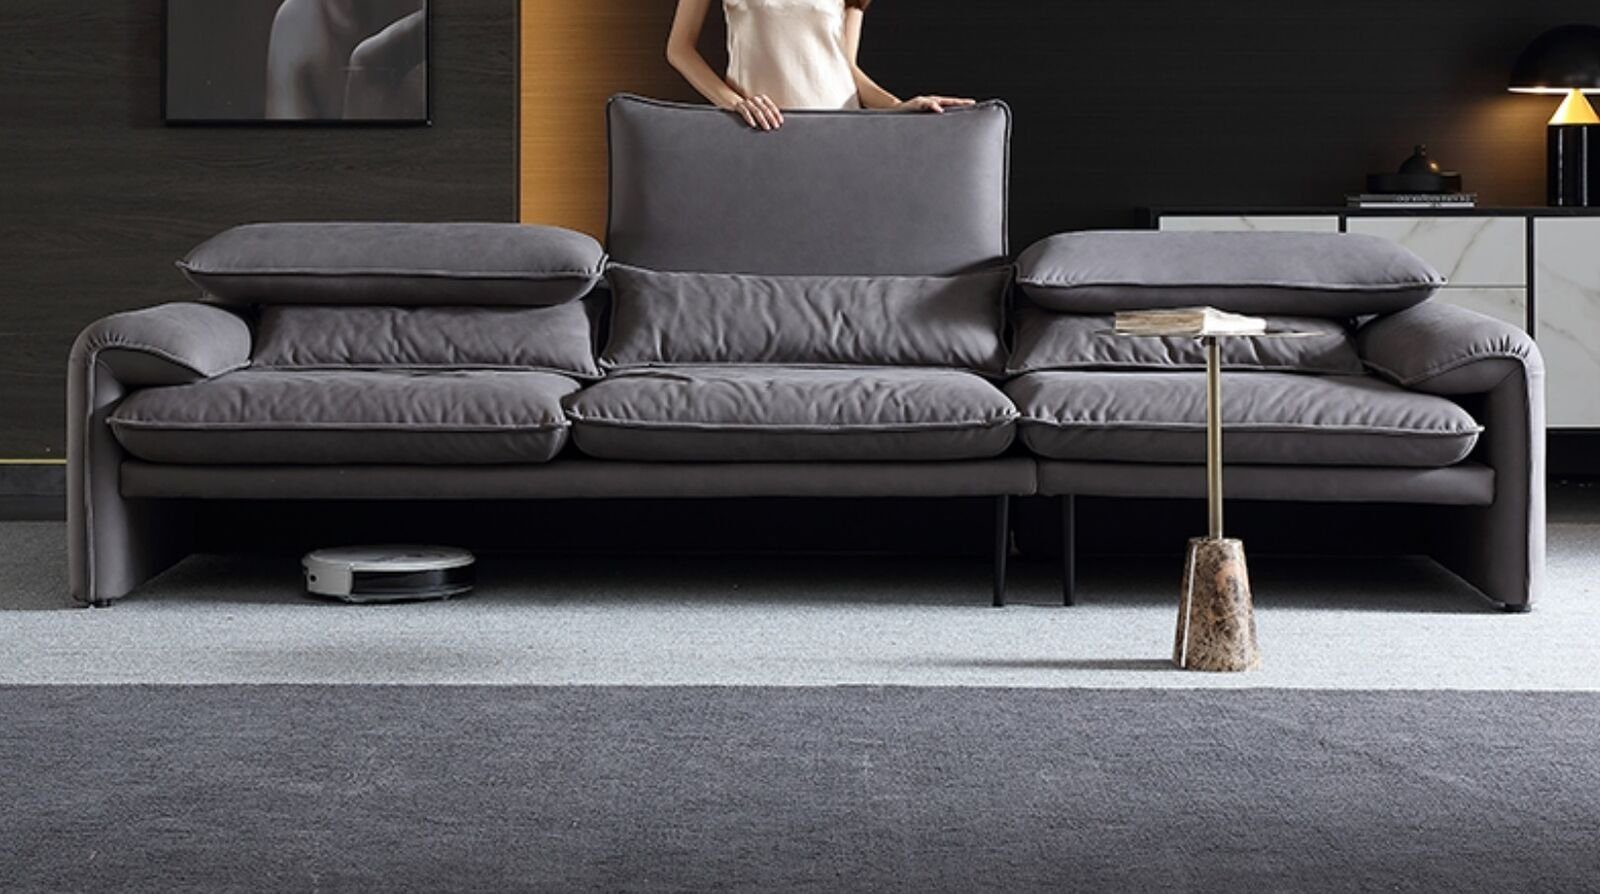 JVmoebel Sofa, Design Sofas xxl Sofa 4 Sitzer Textil Big Neu Wohnzimmer Couch